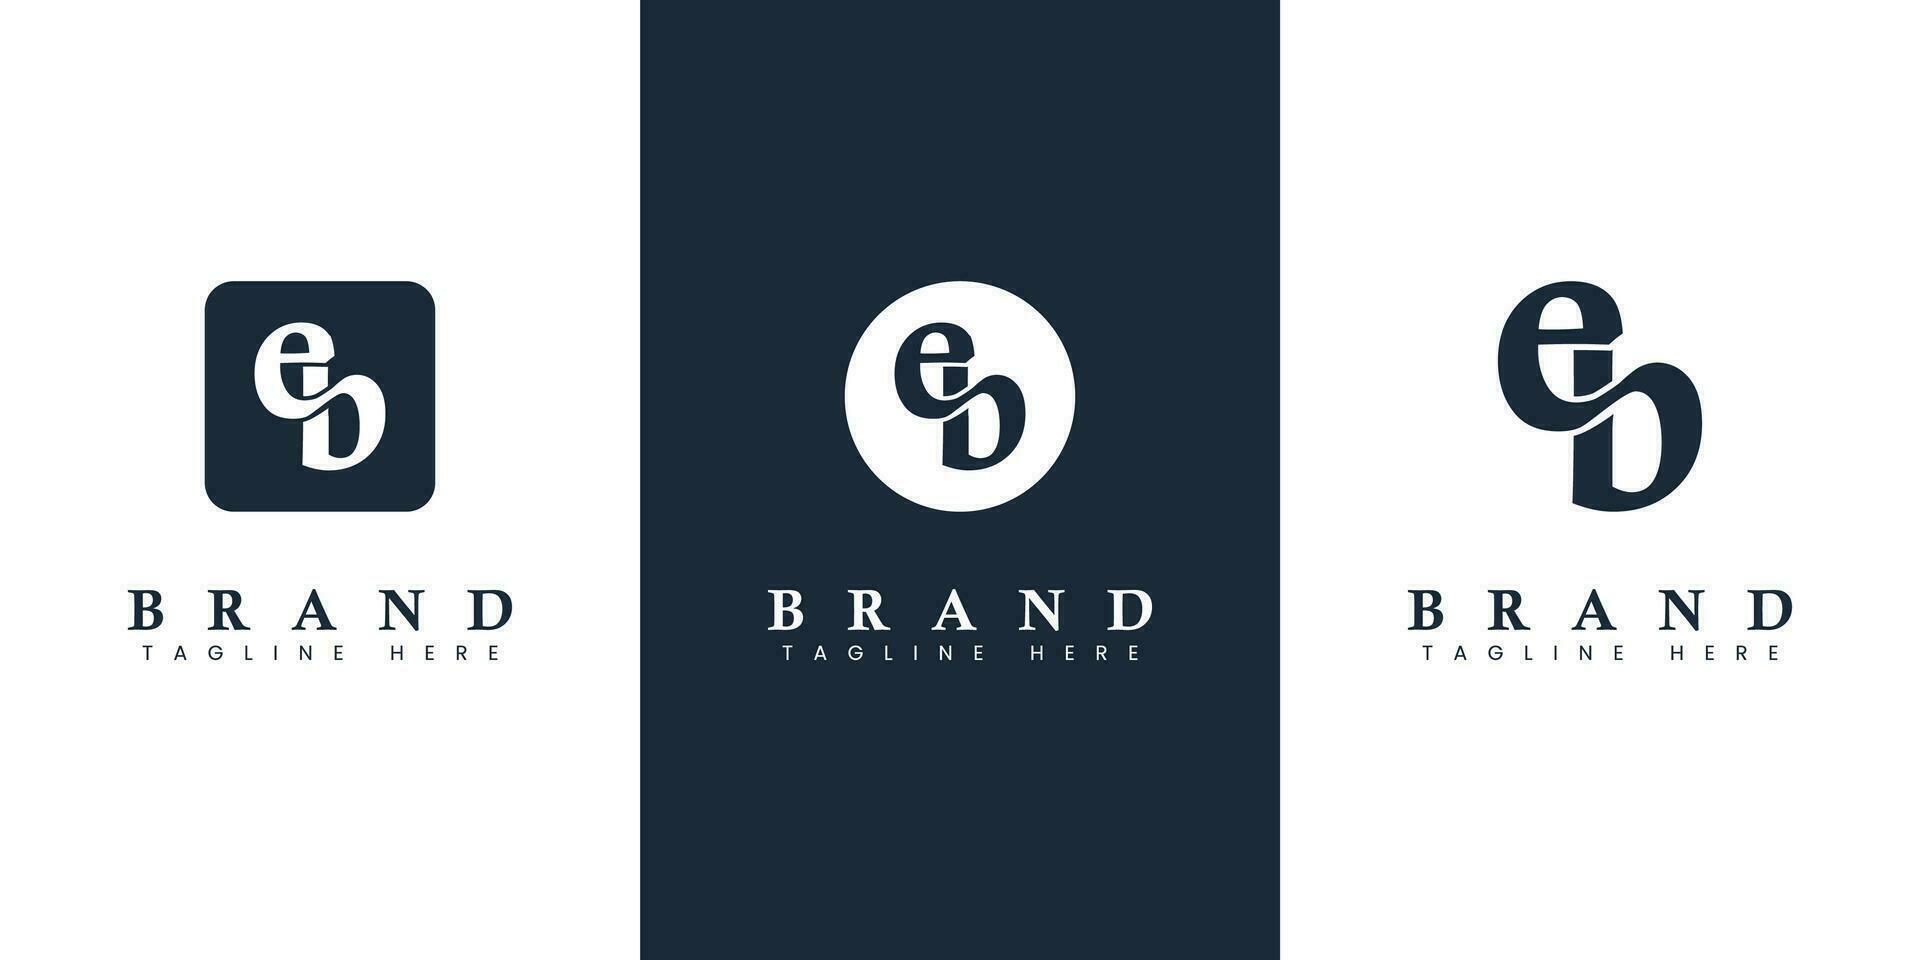 moderno e simples minúsculas eb carta logotipo, adequado para o negócio com eb ou estar iniciais. vetor